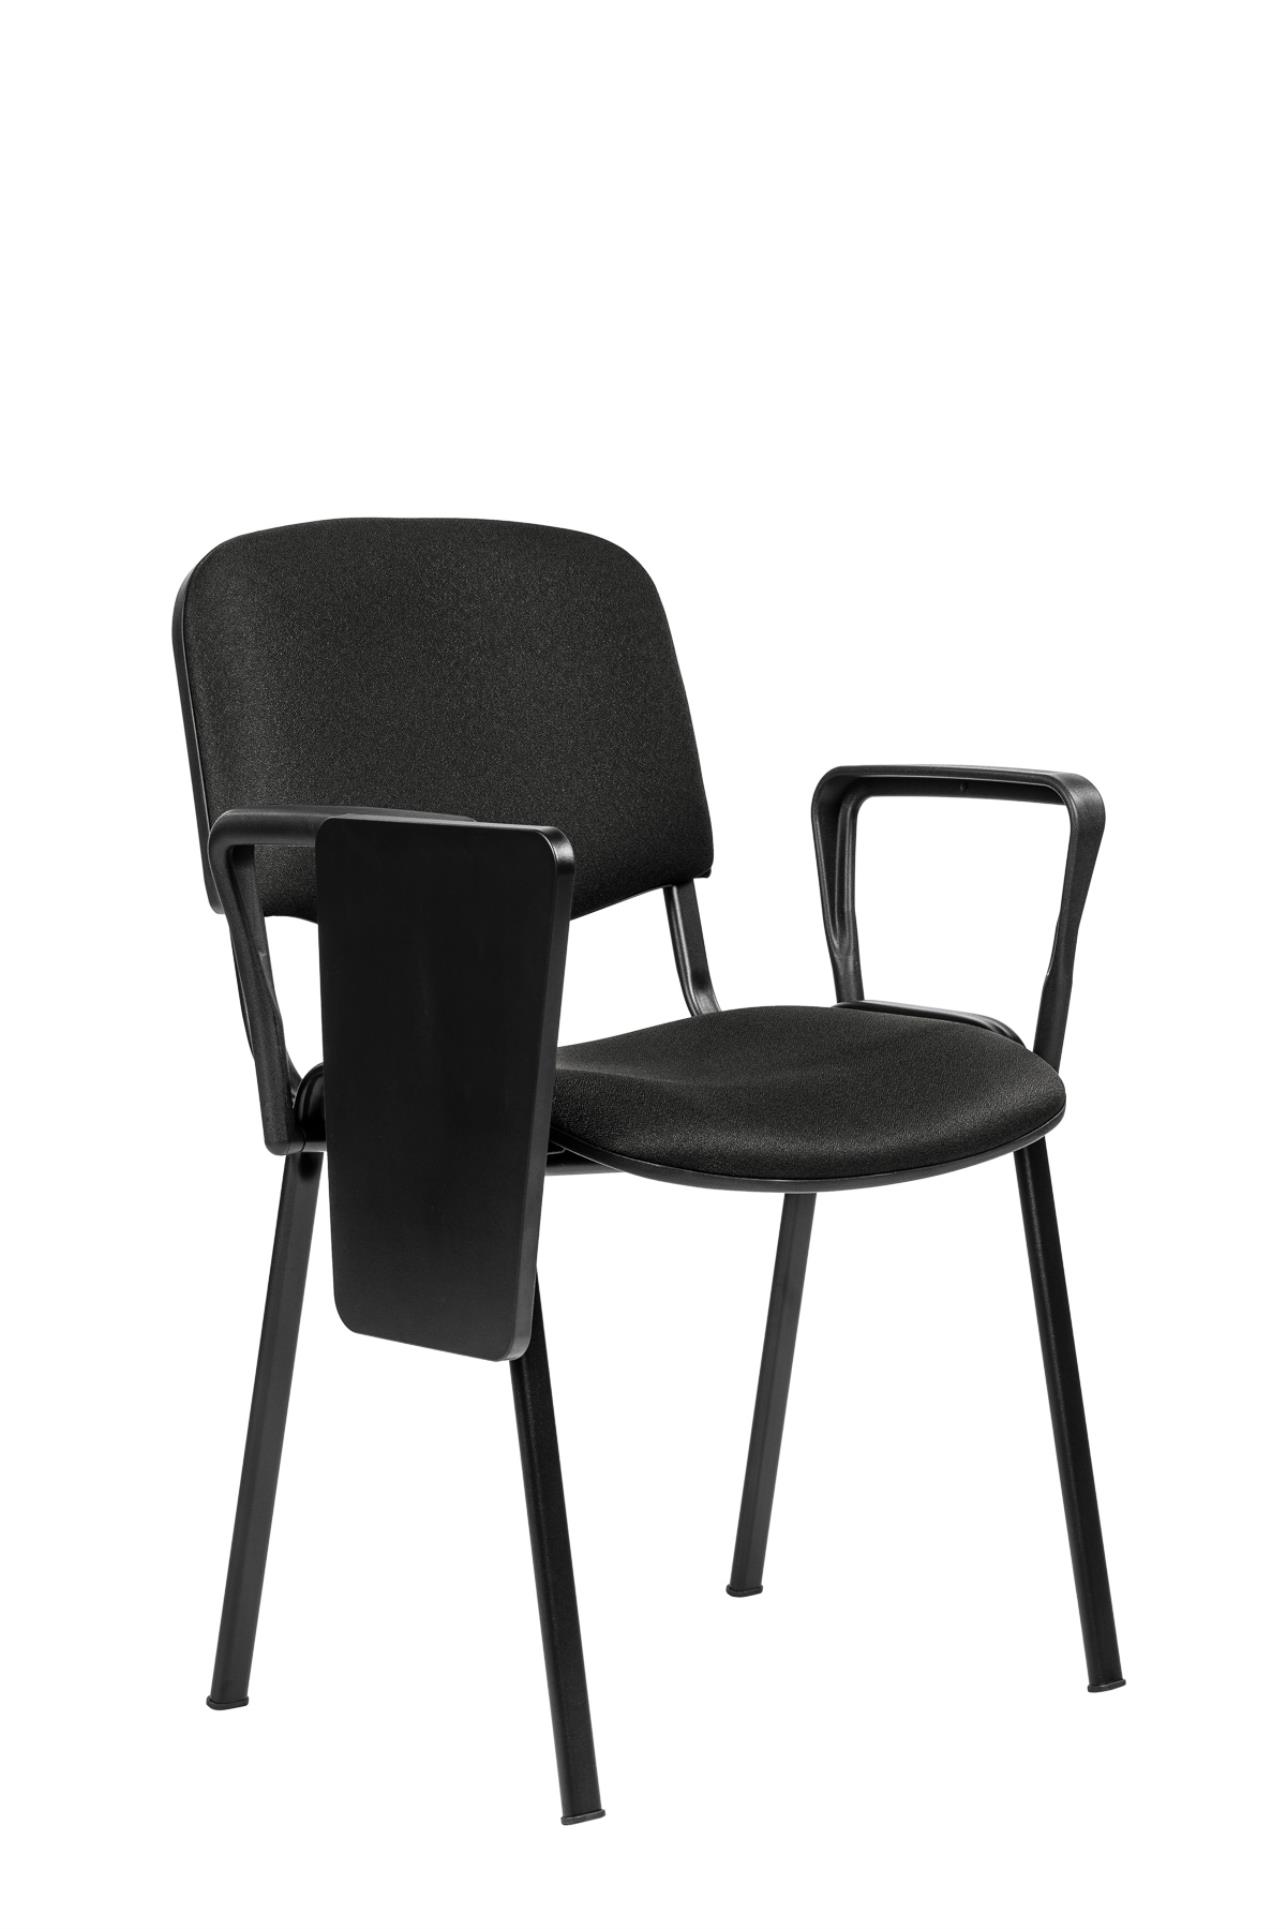 Antares Konferenční židle ISO N se sklopným stolkem - černá, kostra černá